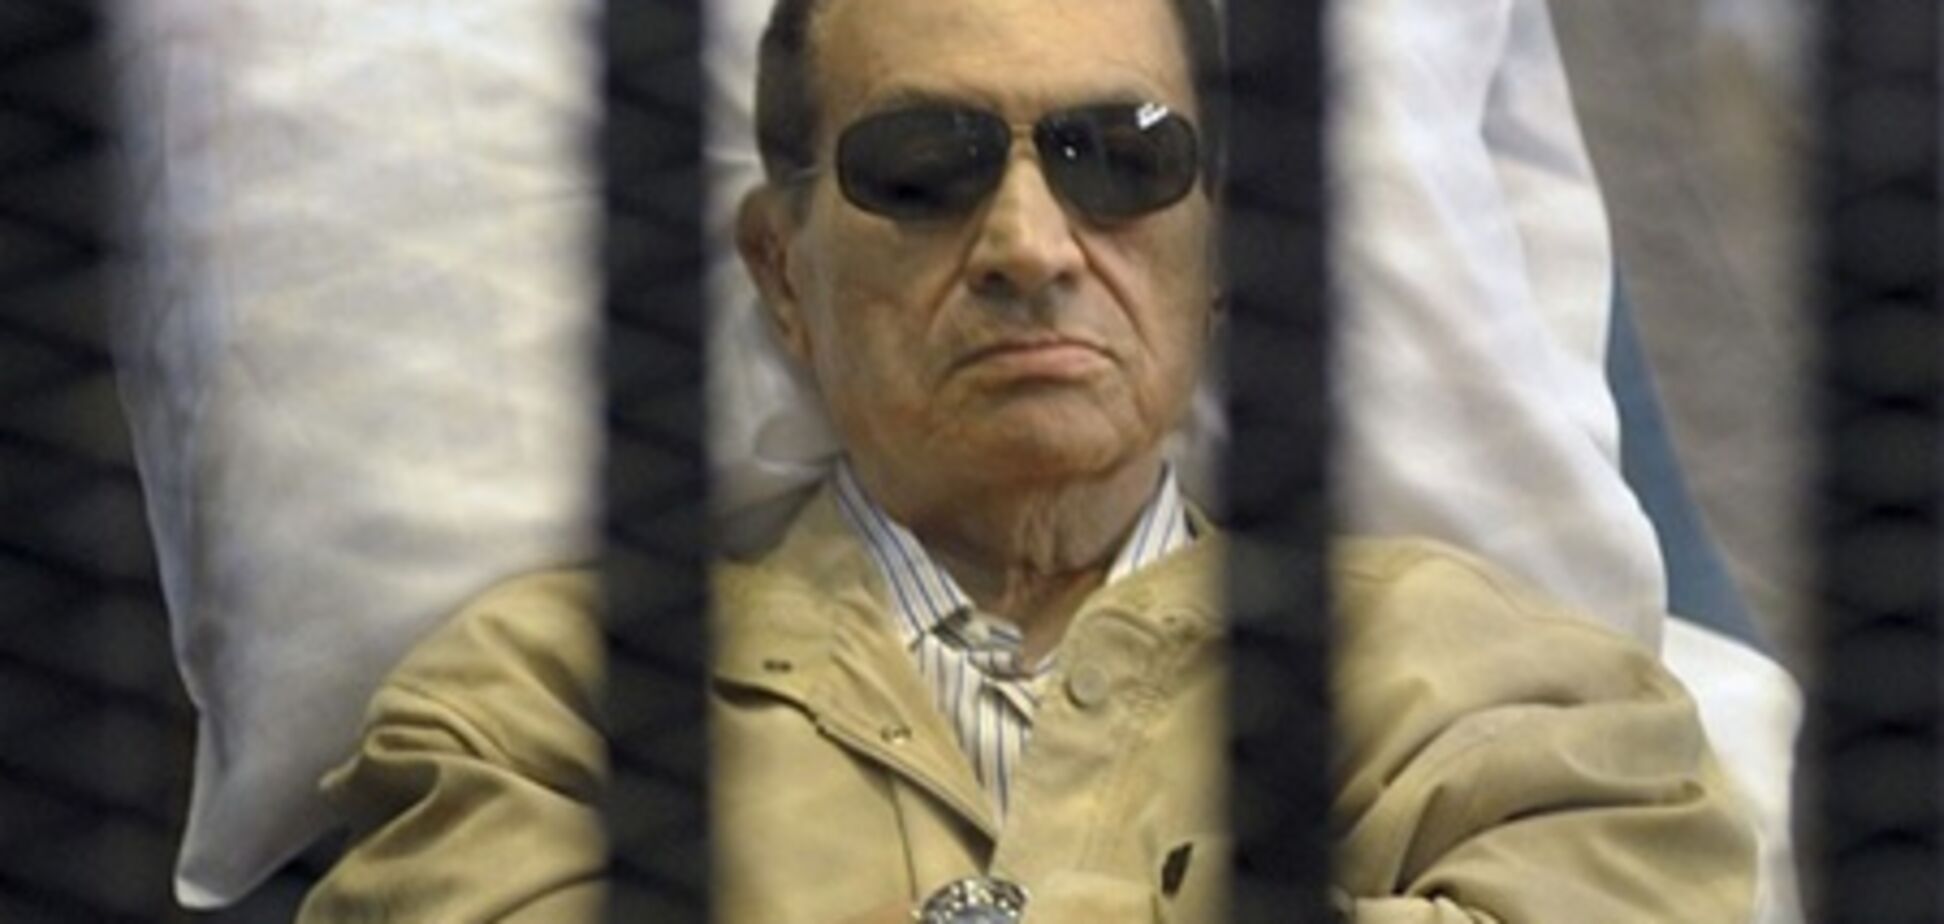 СМИ: власти Египта врали о состоянии здоровья Мубарака